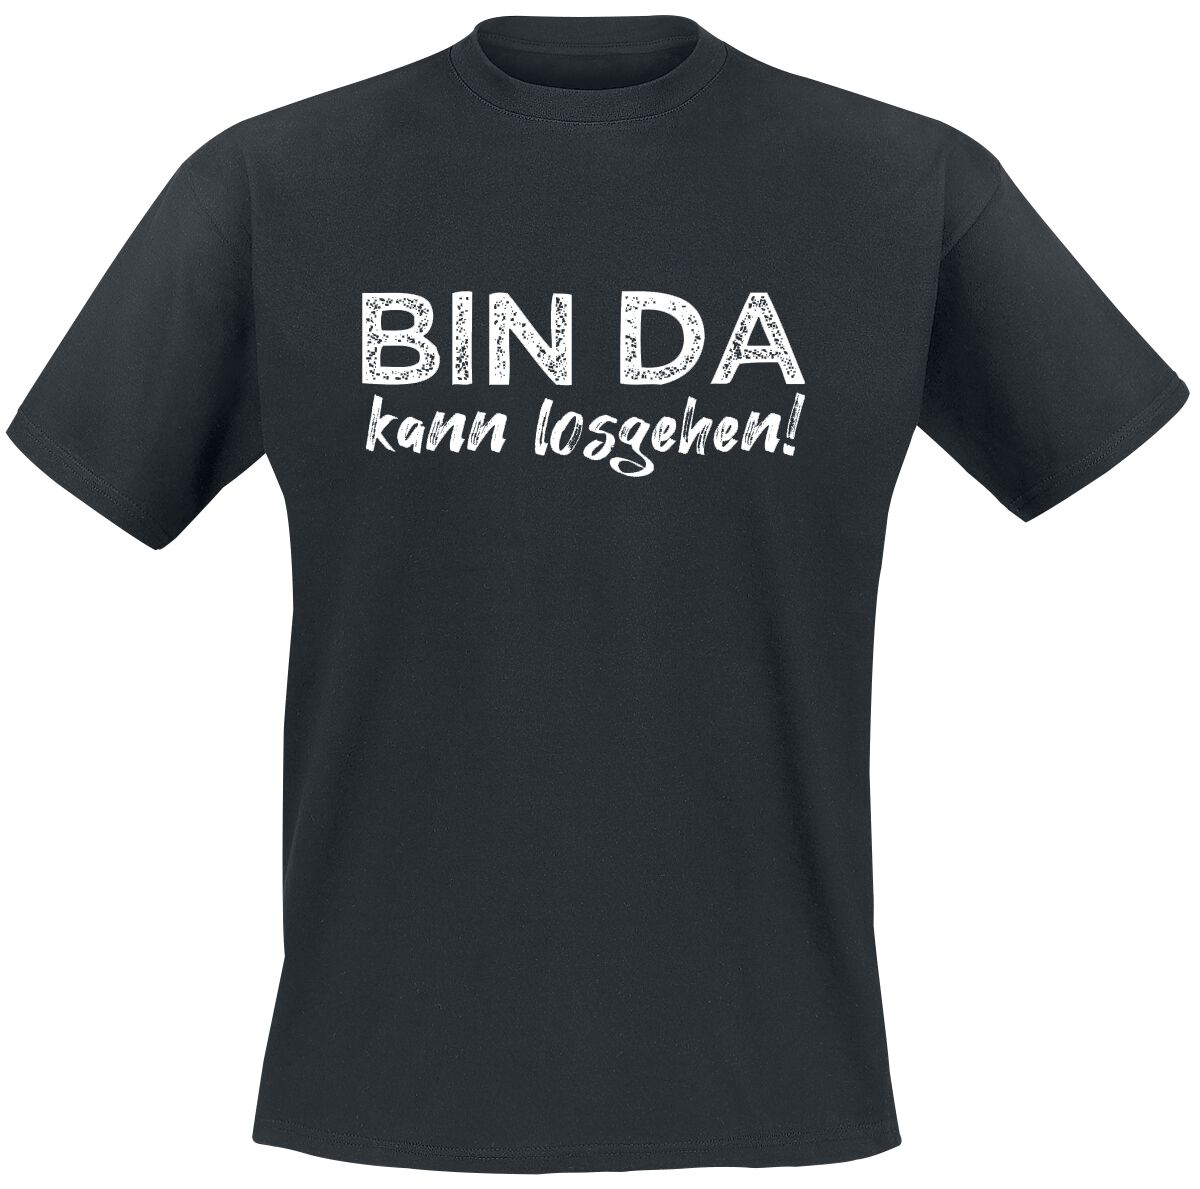 Sprüche T-Shirt - Bin da kann losgehen! - 3XL bis 4XL - für Männer - Größe 4XL - schwarz